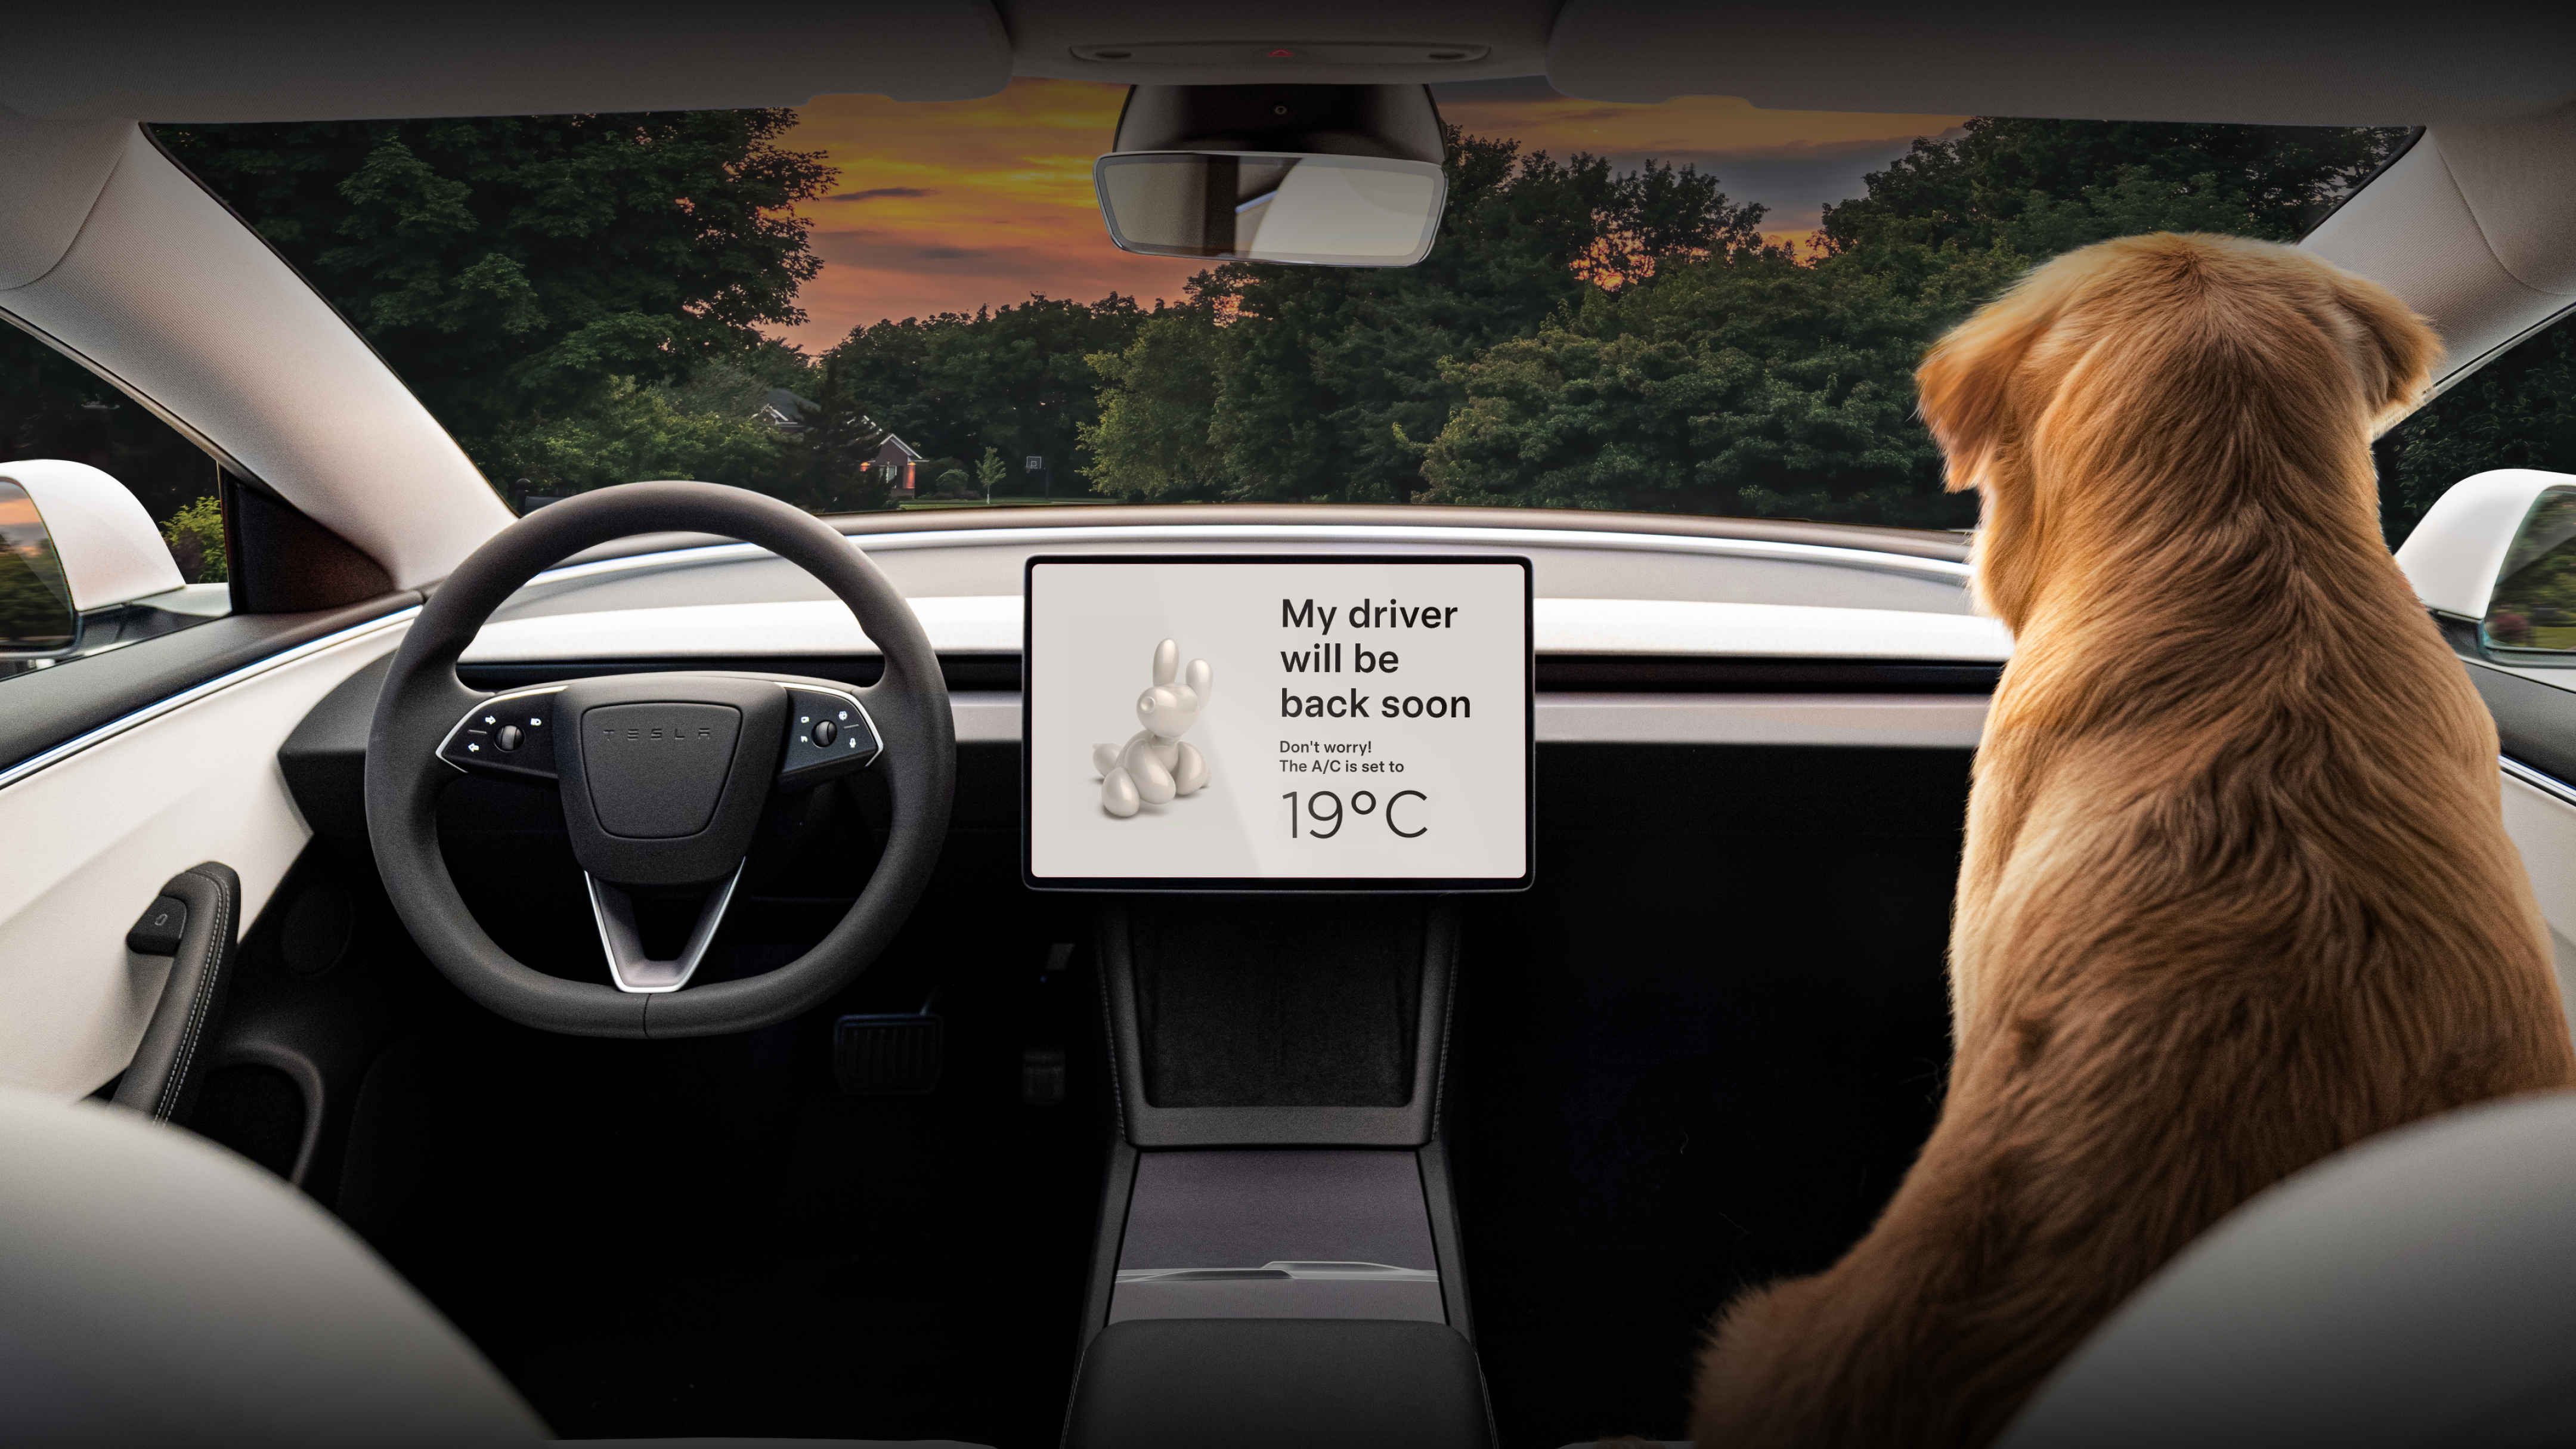 Ecrã tátil central com "My driver will be back soon" e um Golden Retriever no banco do passageiro.